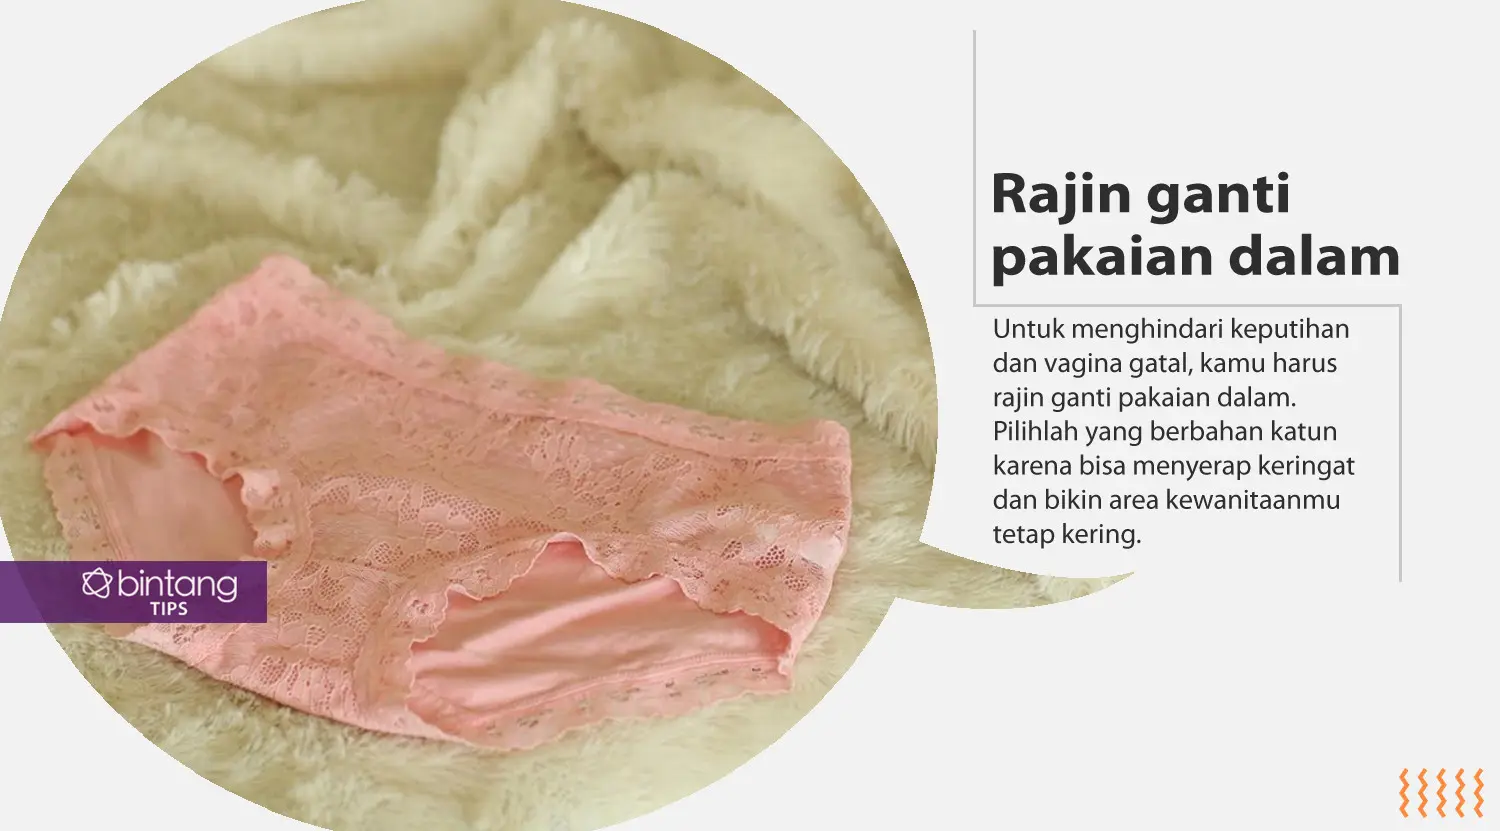 Ini caranya mengatasi vagina gatal dan keputihan. (Foto: Daniel Kampua, Digital Imaging: Nurman Abdul Hakim/Bintang.com)